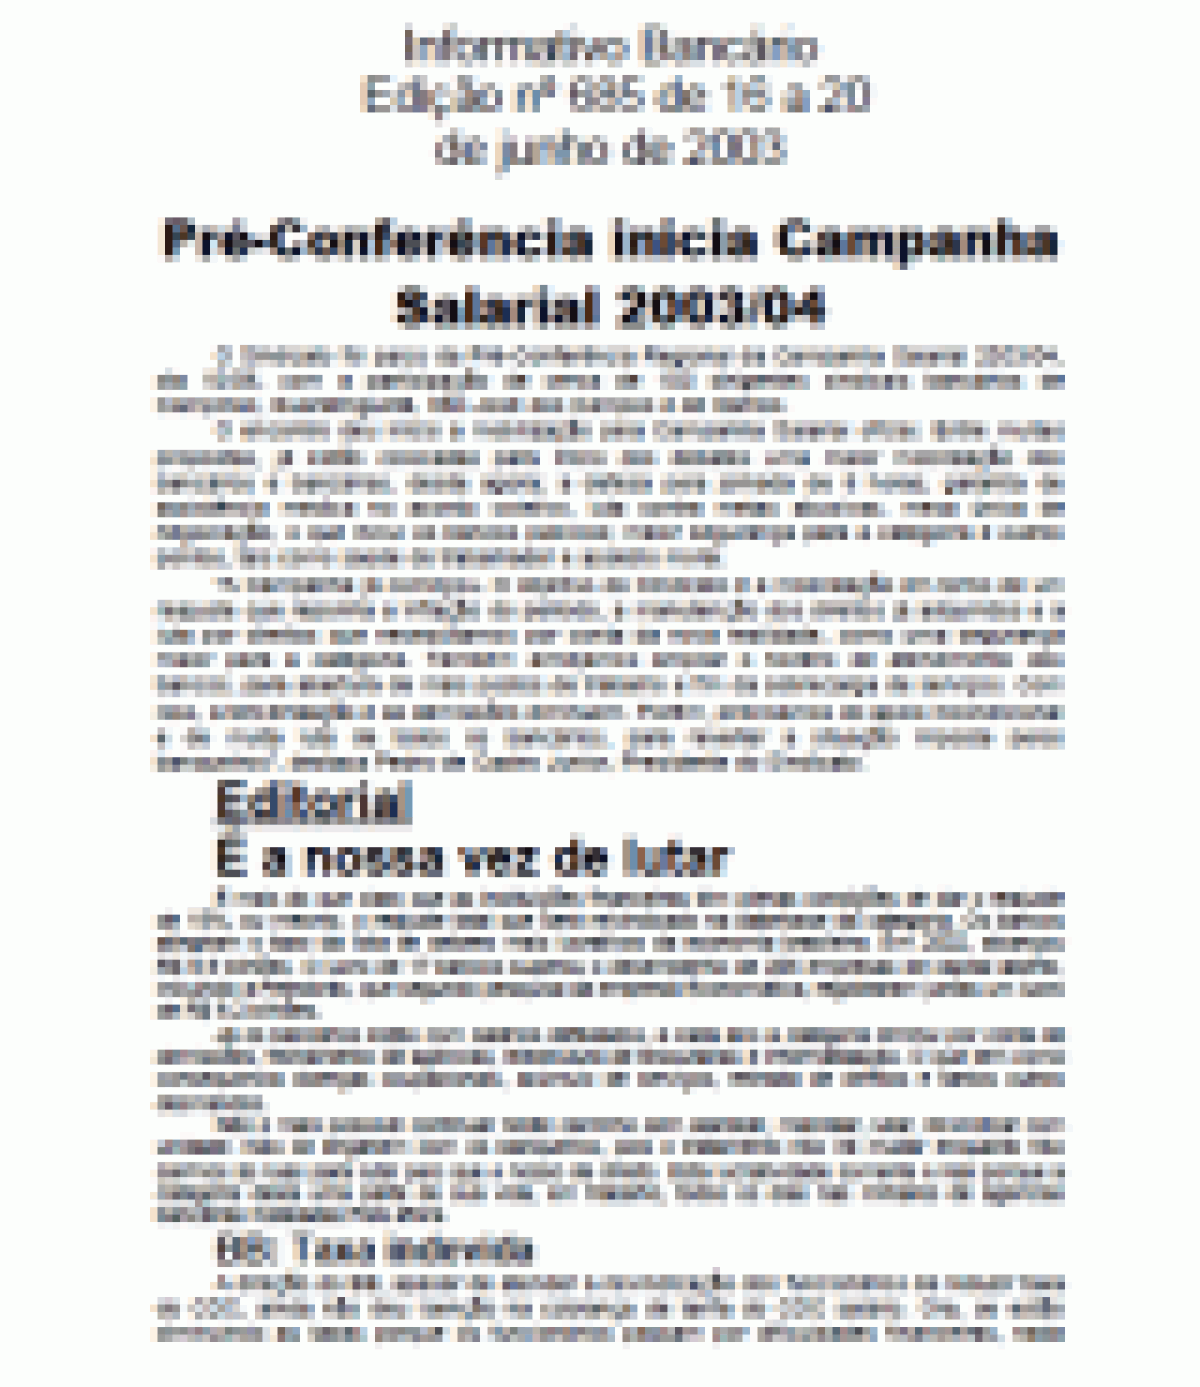 Pré-Conferência inicia Campanha Salarial 2003/04